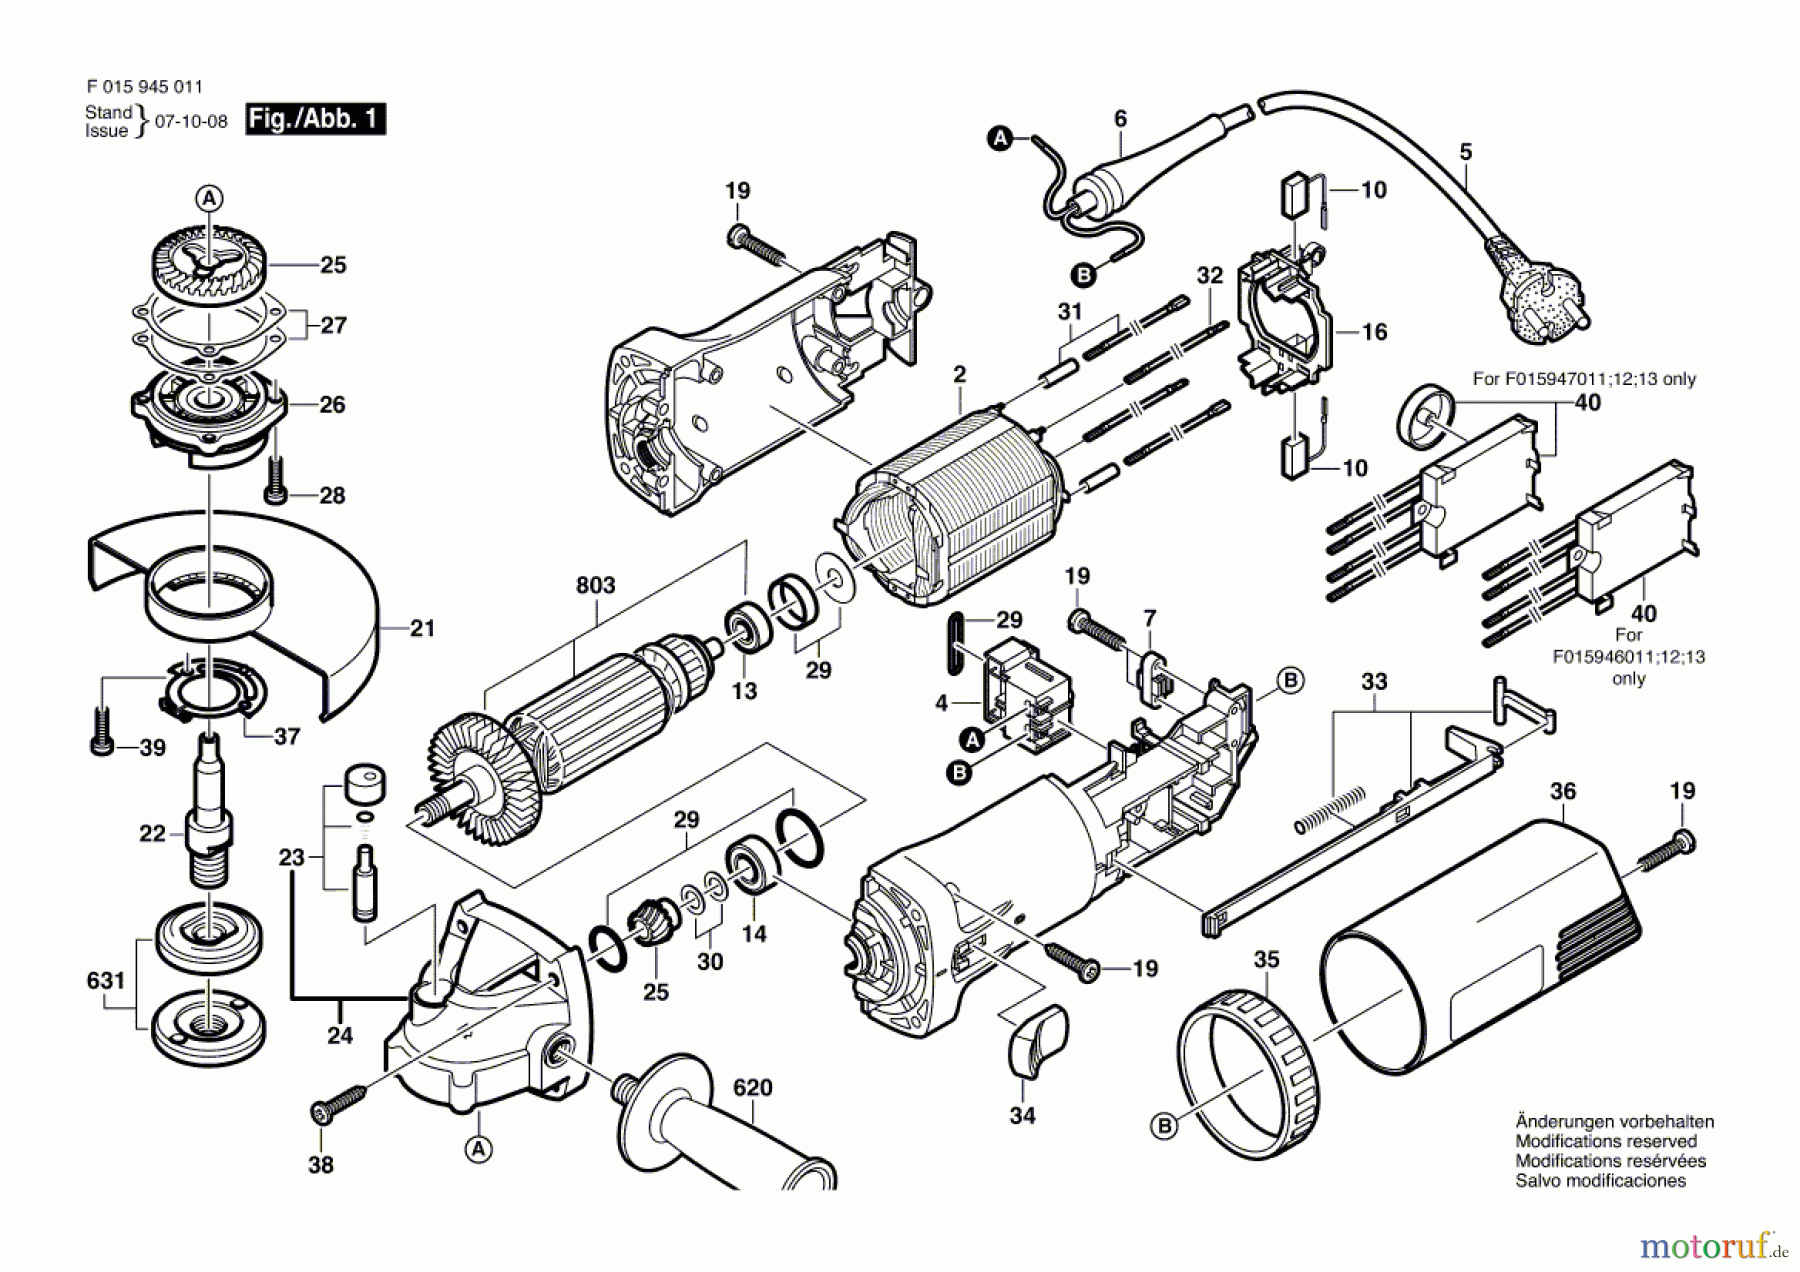  Bosch Werkzeug Winkelschleifer 9470 Seite 1